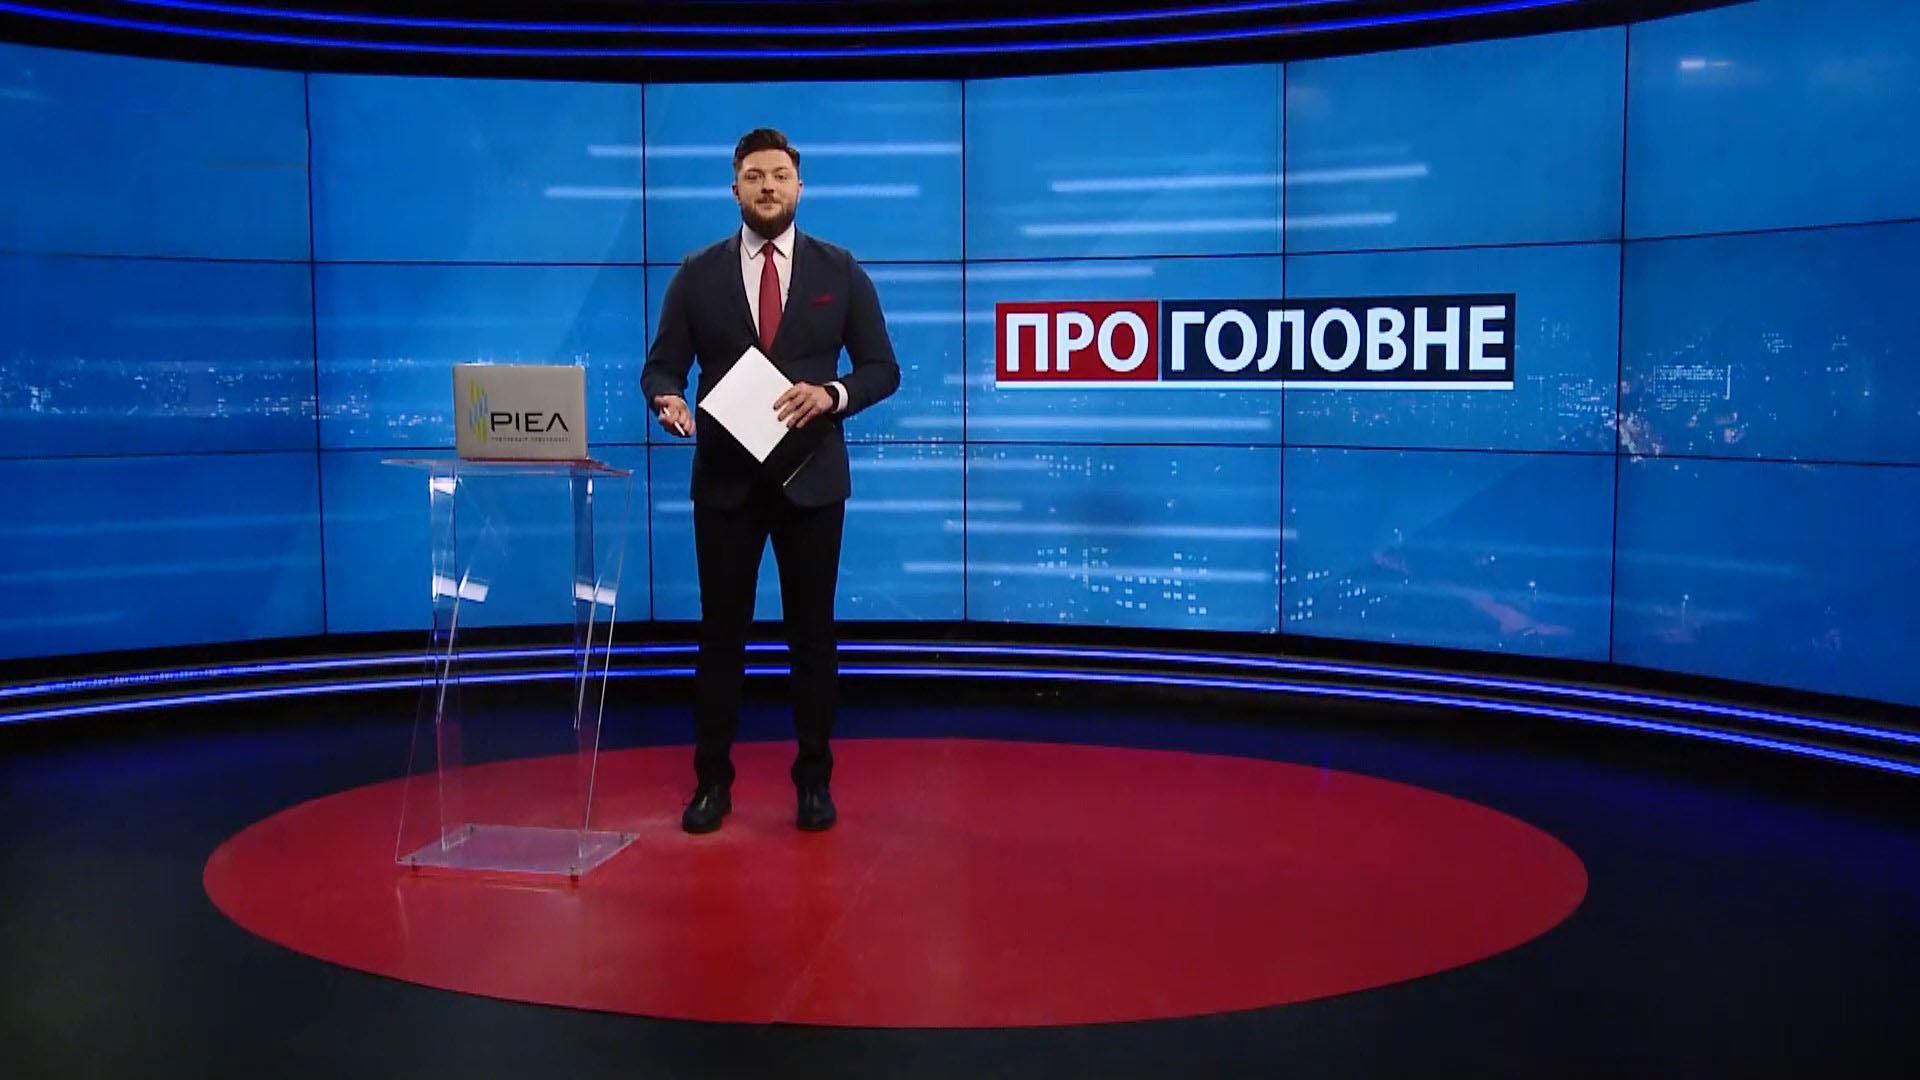 Про головне: Путін боїться присутності НАТО в Україні. Резніков може замінити Тарана - Новини Росії і України - 24 Канал